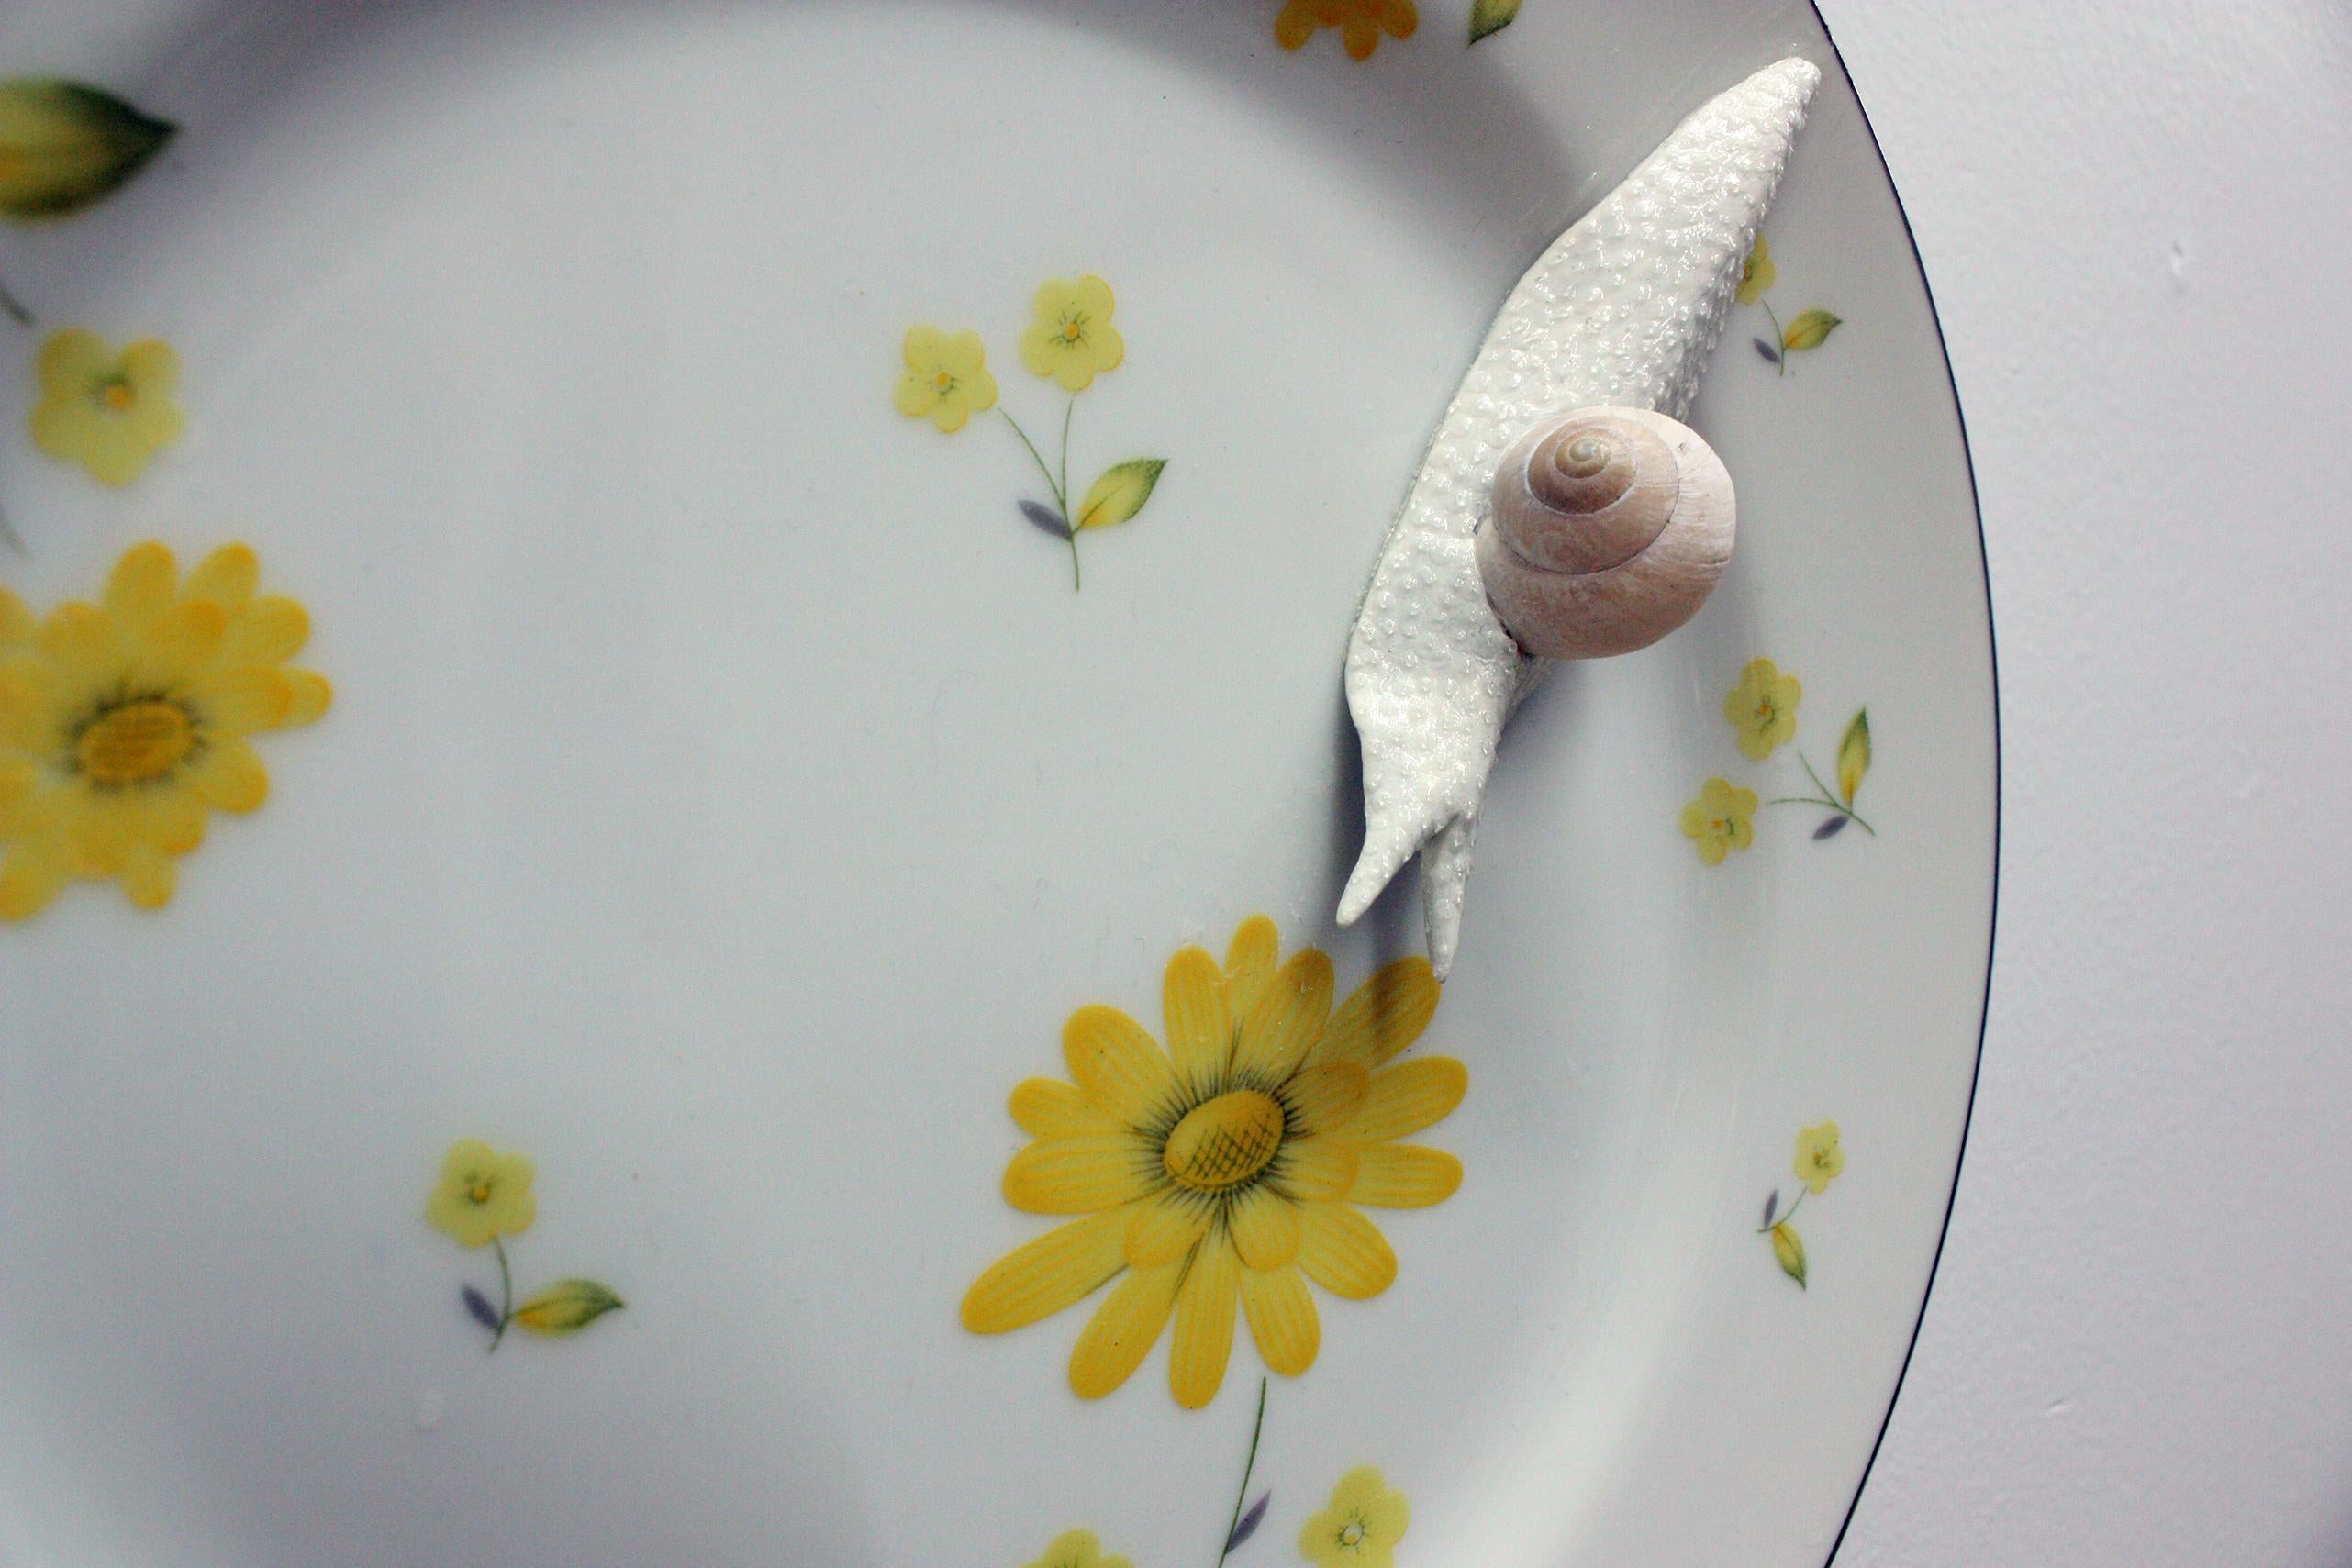 coquille escargot ceramique leclerc